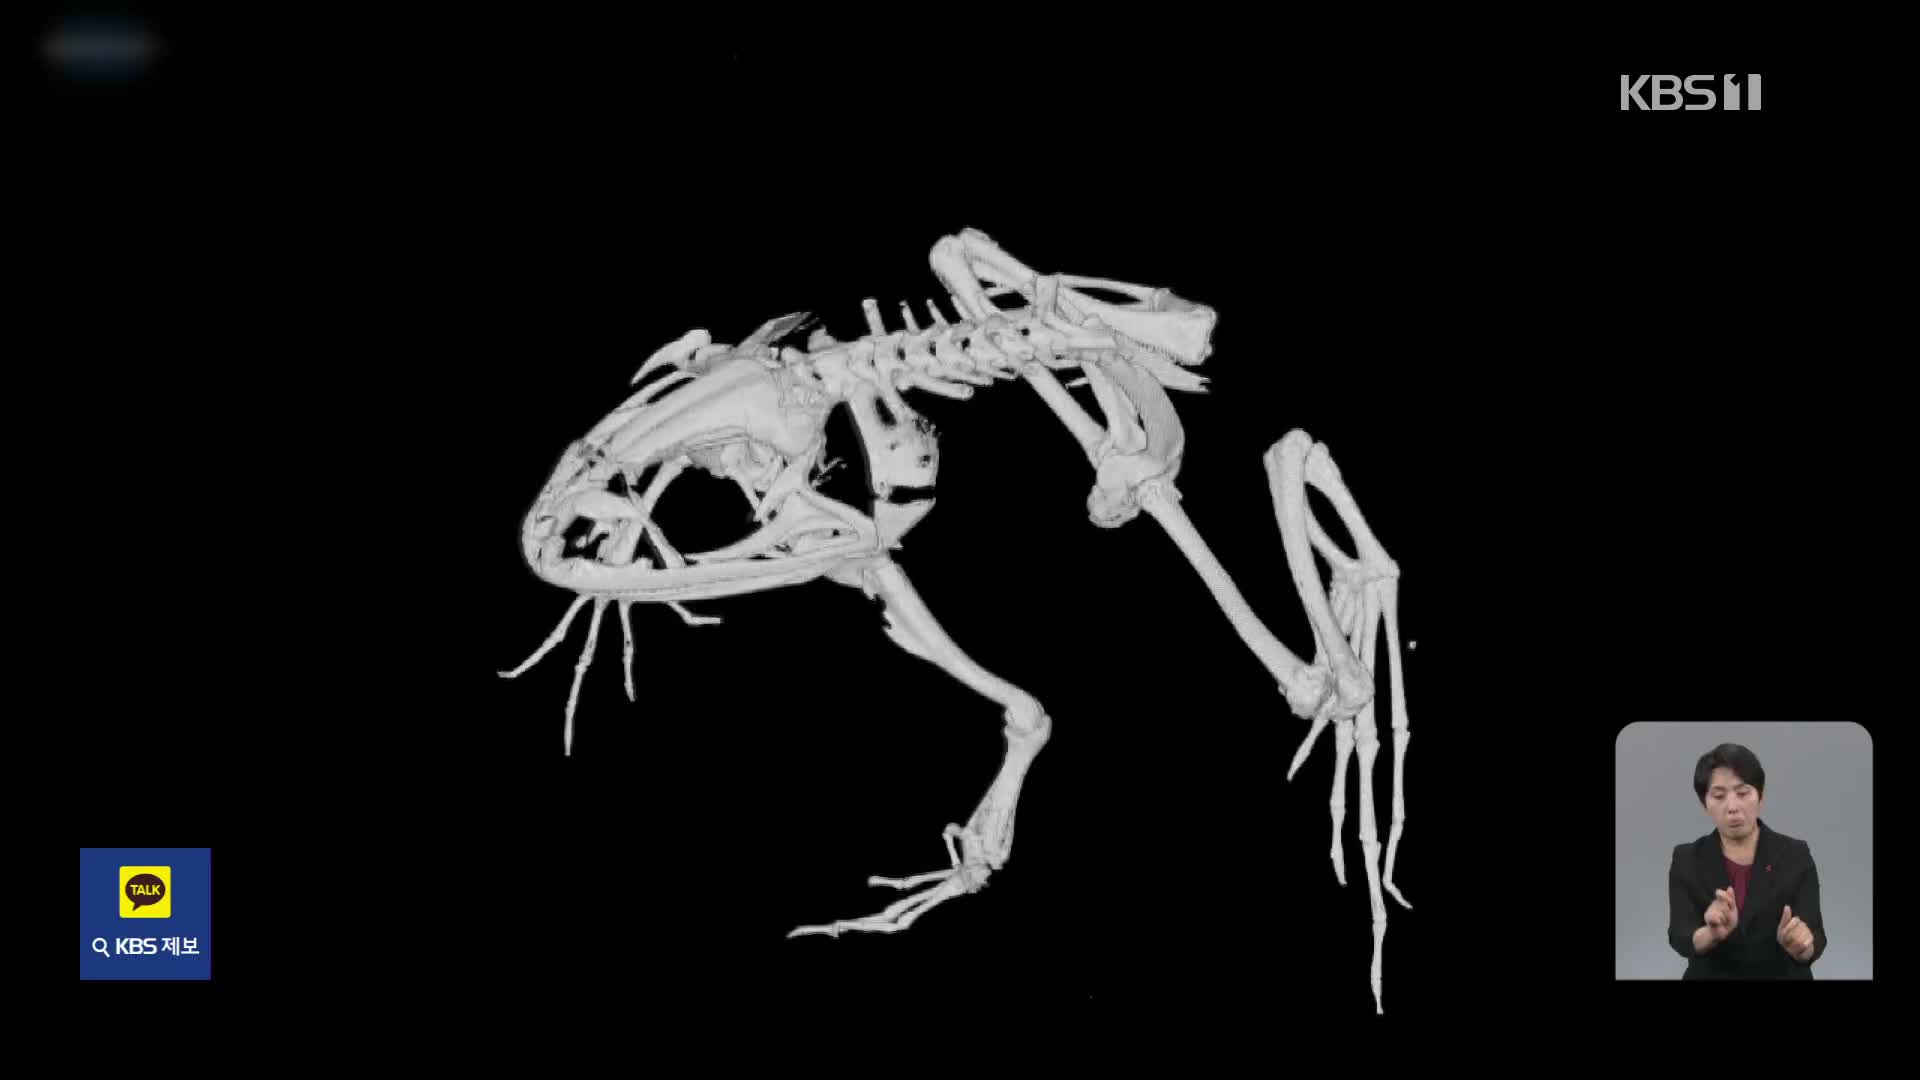 [기후는 말한다] ‘멸종 위기’ 금개구리, 3D로 보전한다